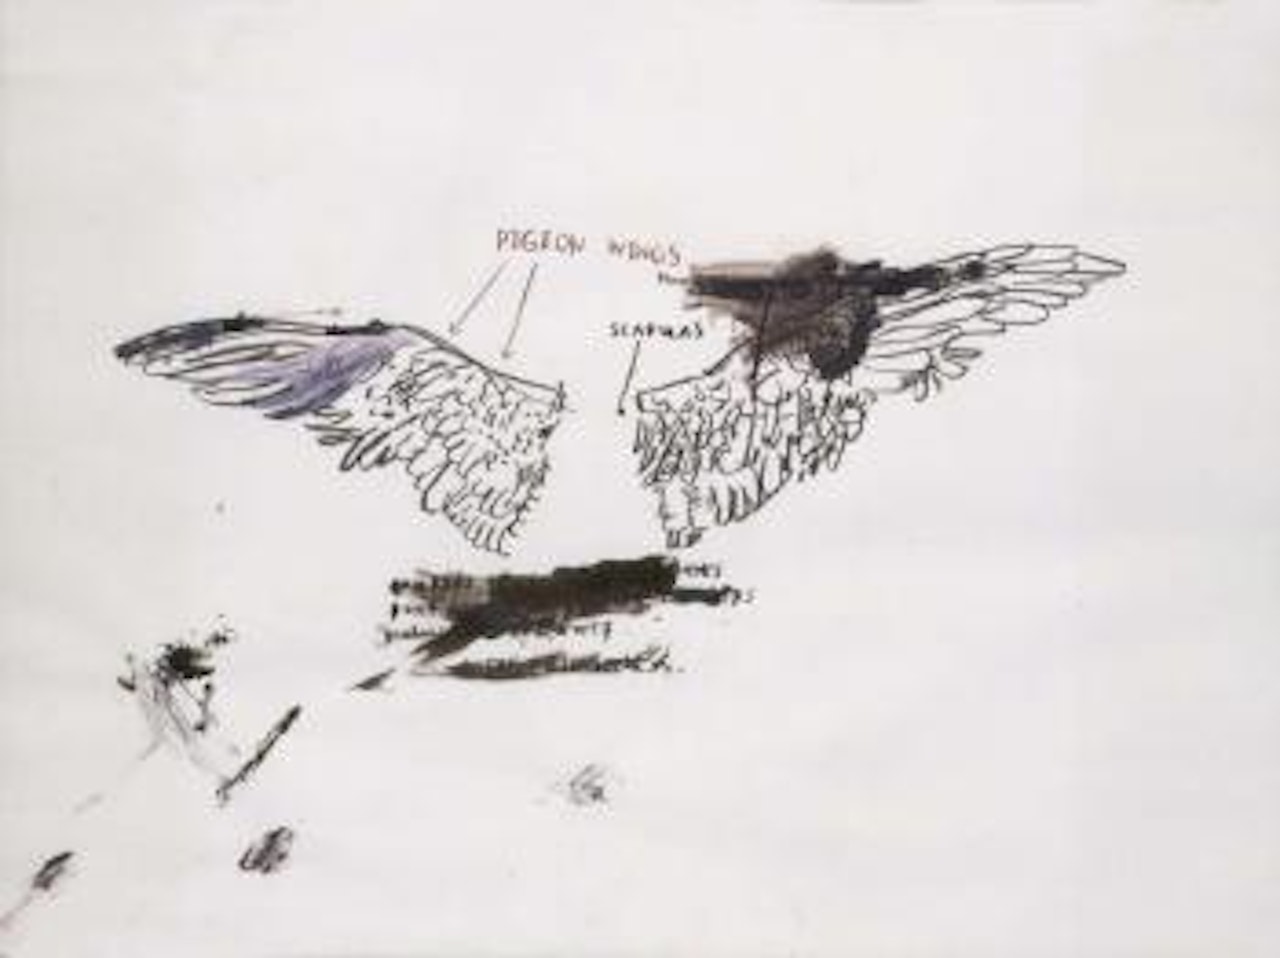 Pigeon anatomy by Jean-Michel Basquiat